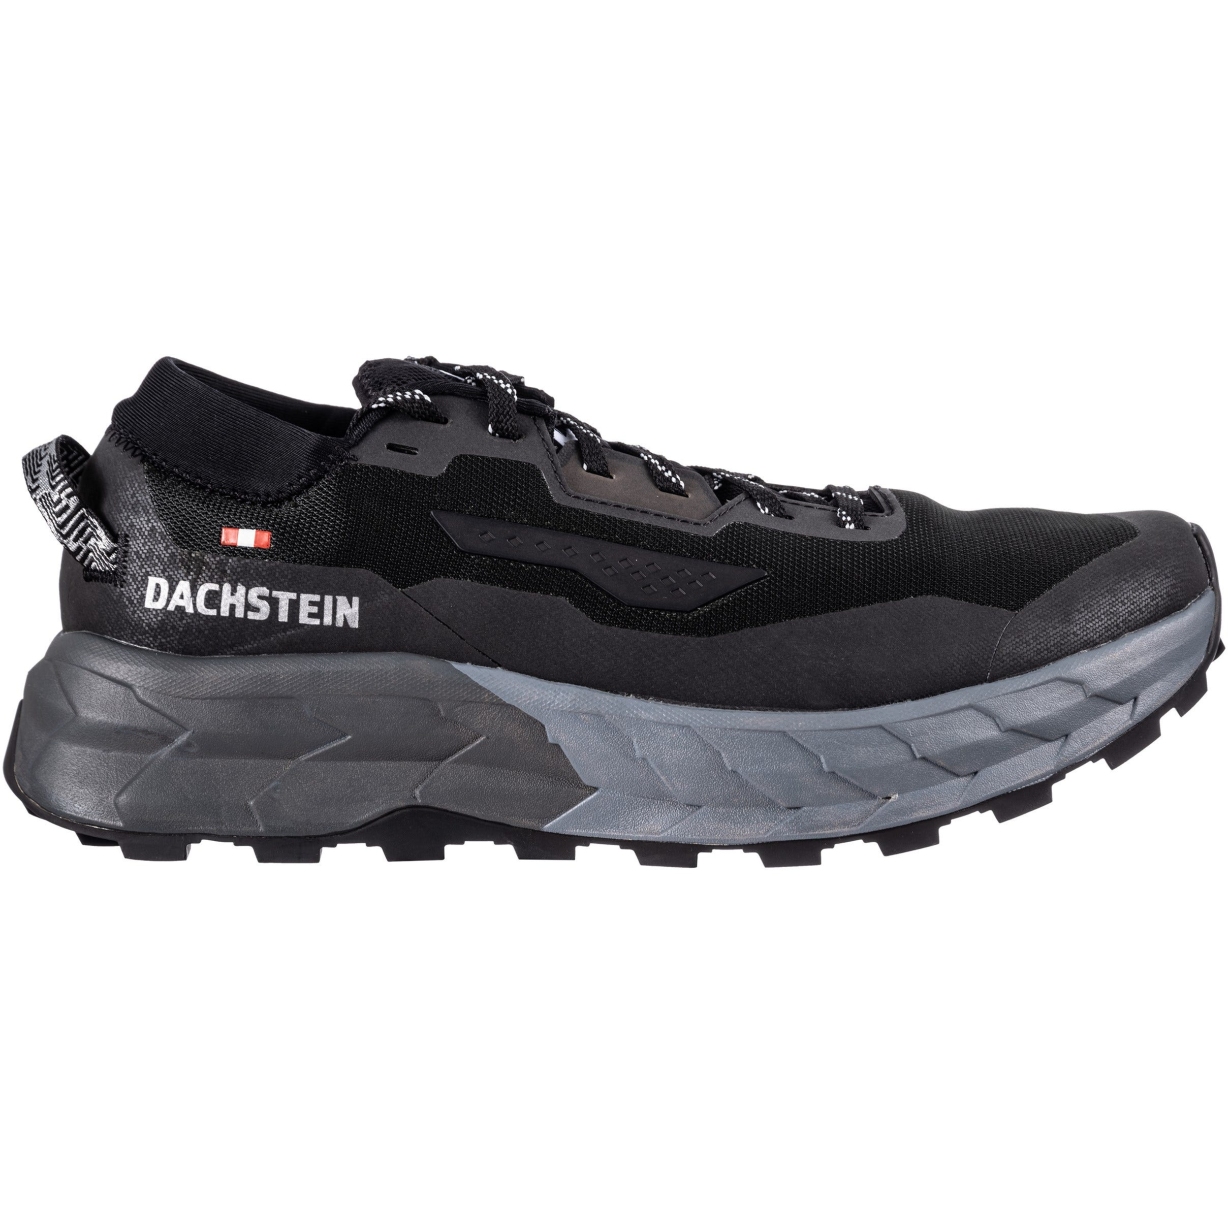 Productfoto van Dachstein X-Trail 01 Speedhiking Schoenen - zwart